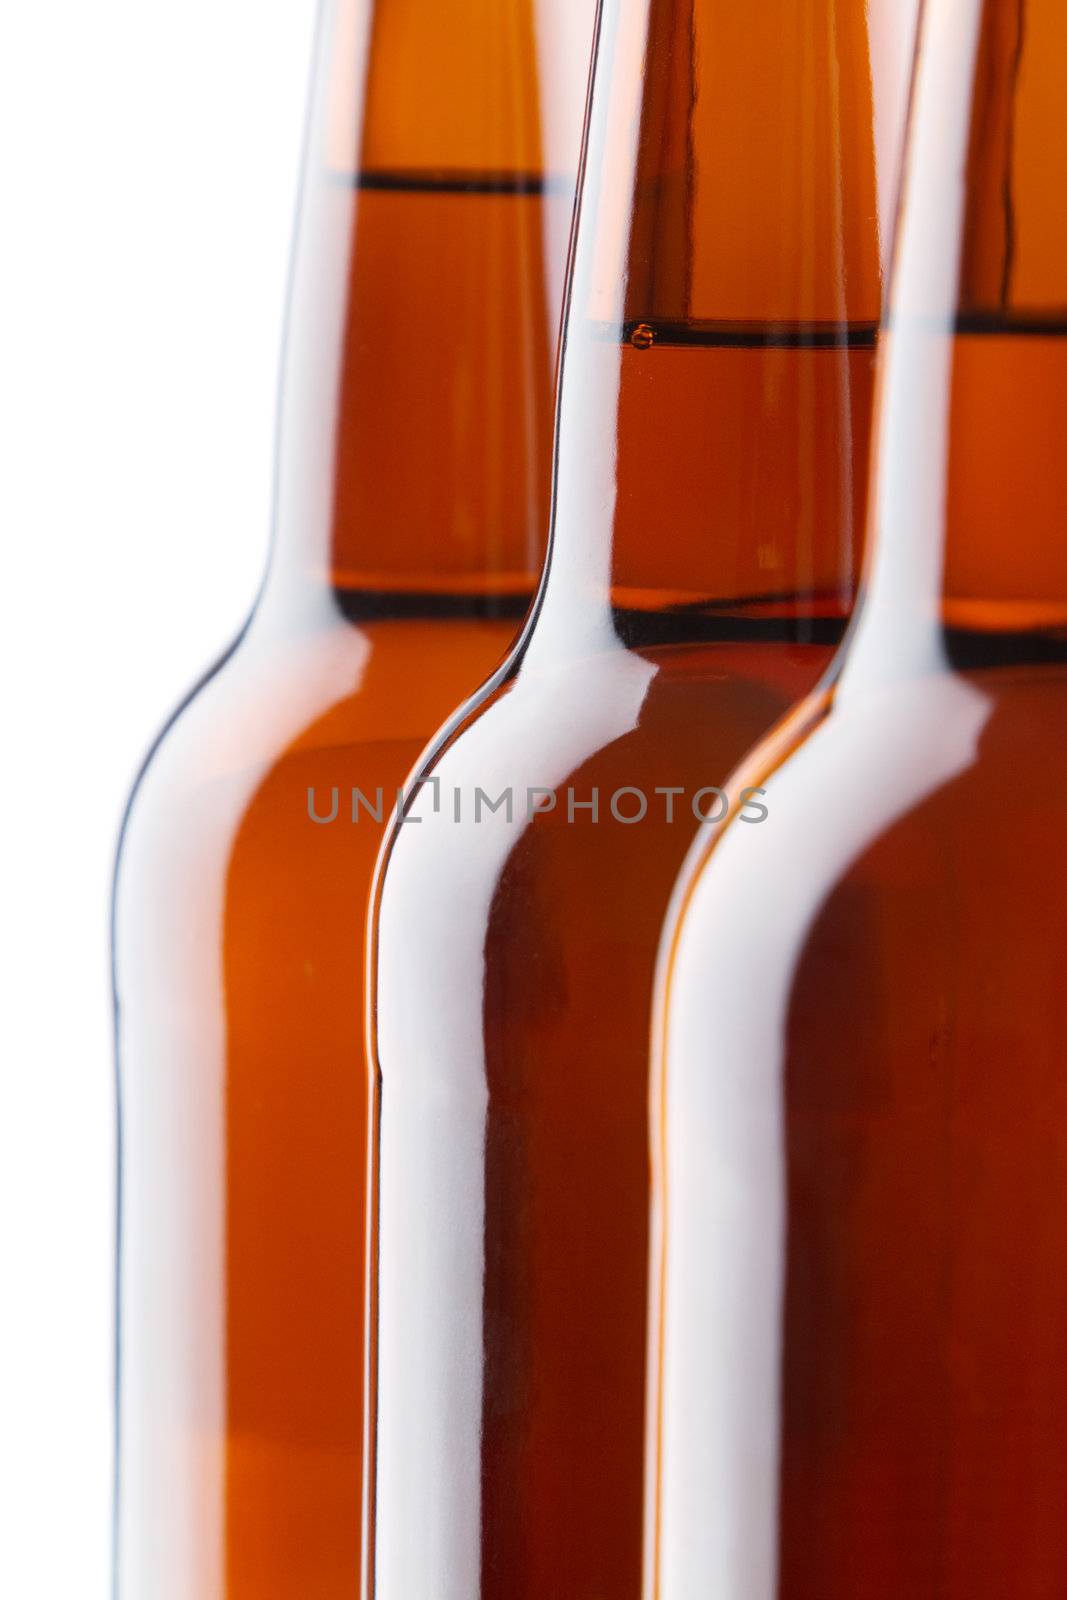 Beer bottles isolated on white background, studio still-life